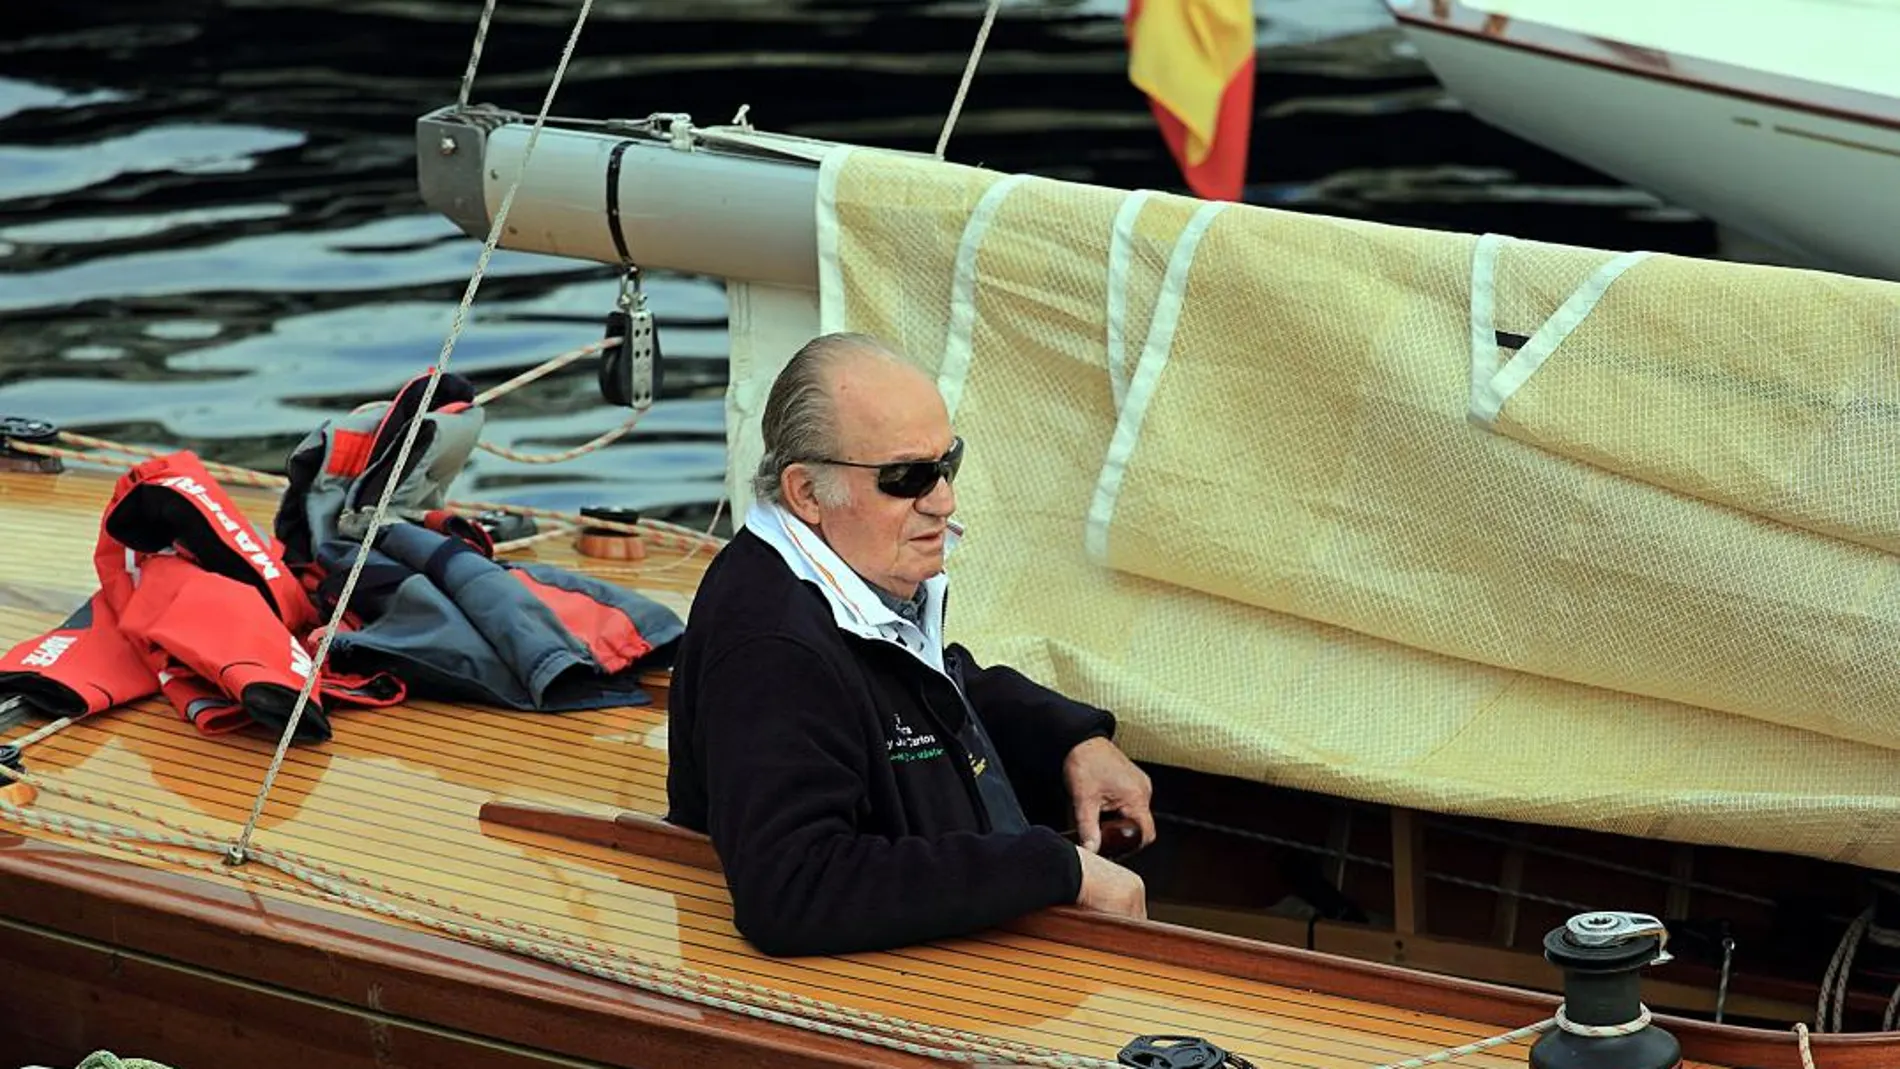 Don Juan Carlos quiere competir en las regatas antes de la operación